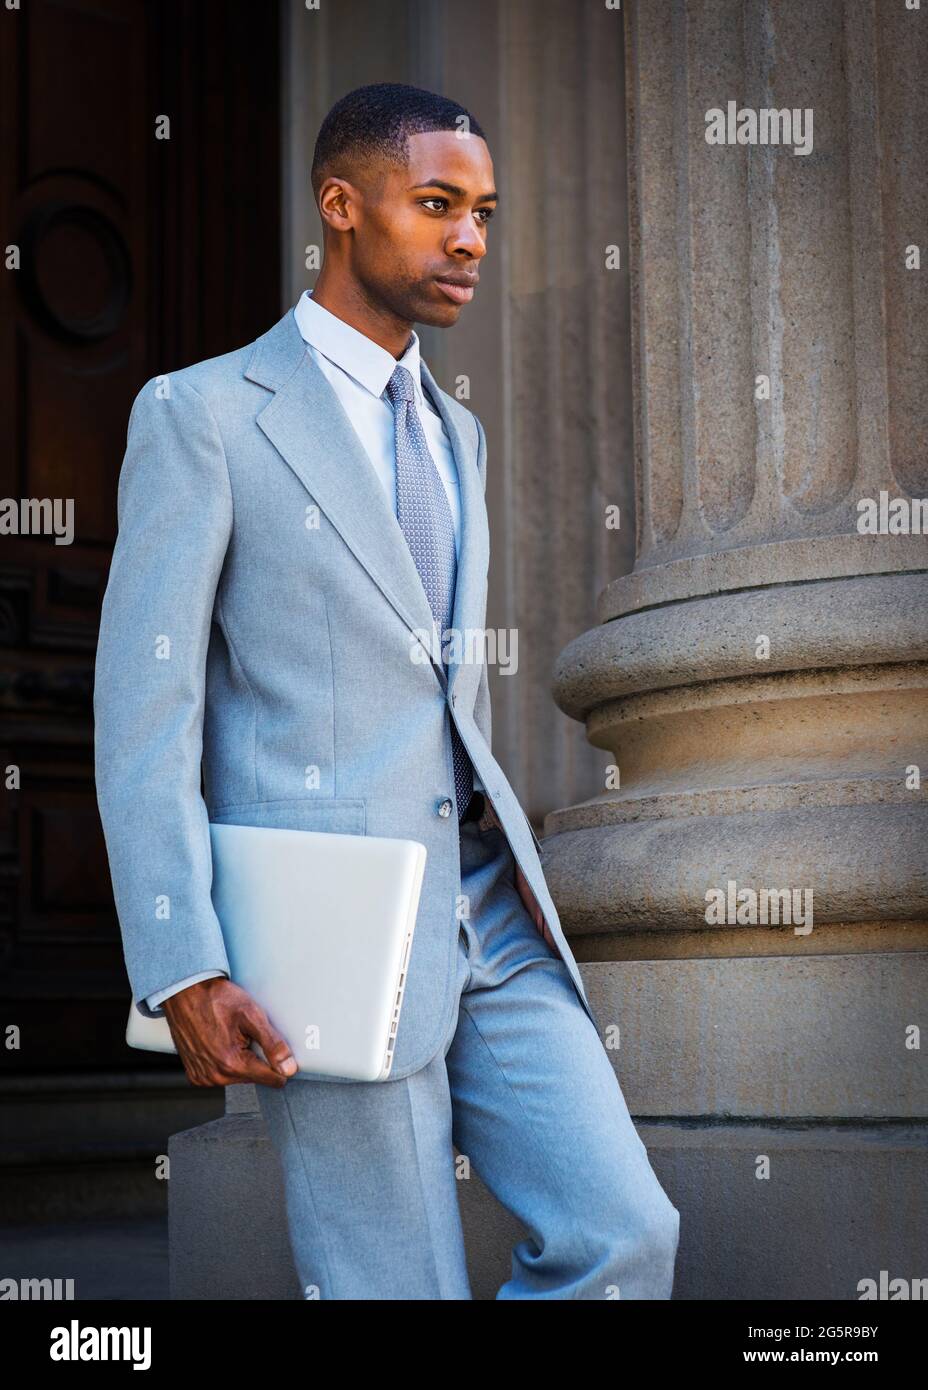 Ein junger afroamerikanischer Geschäftsmann, der einen hellgrauen Anzug,  eine weiße Unterhemd, eine Krawatte und einen Laptop trägt, geht vom Wintag  herunter Stockfotografie - Alamy